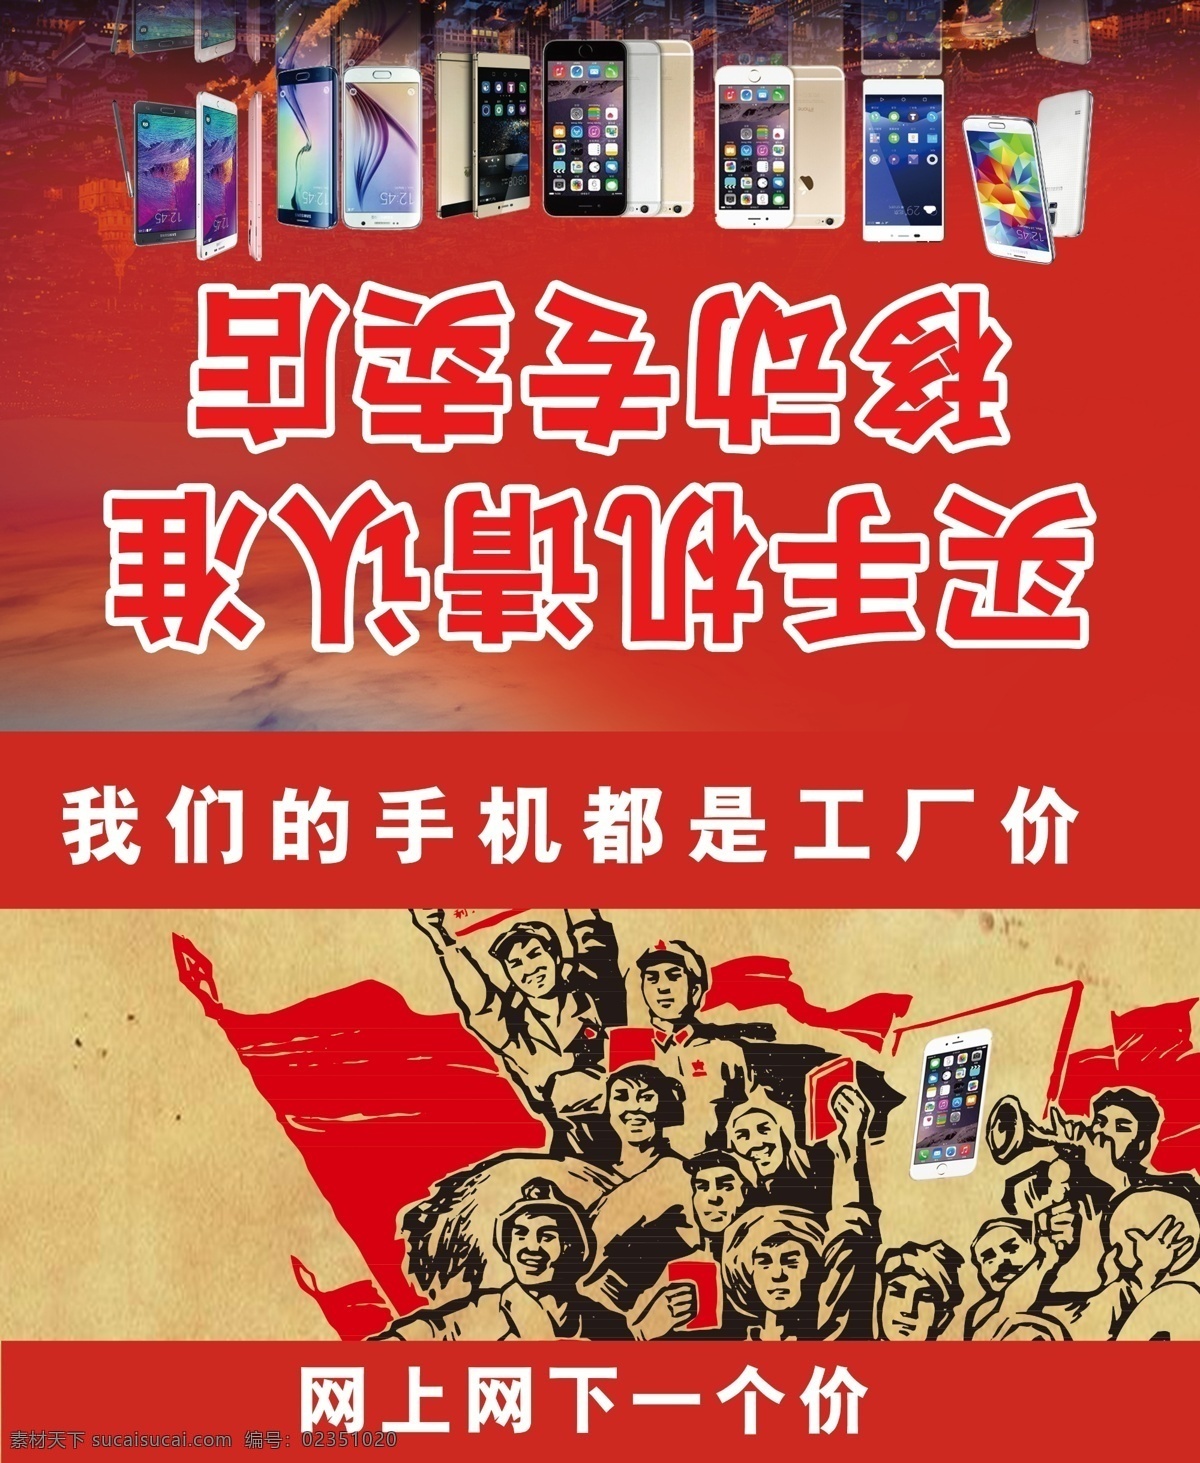 手机 农民 价 广告宣传 手机广告 手机广告宣传 手机农民价 红色